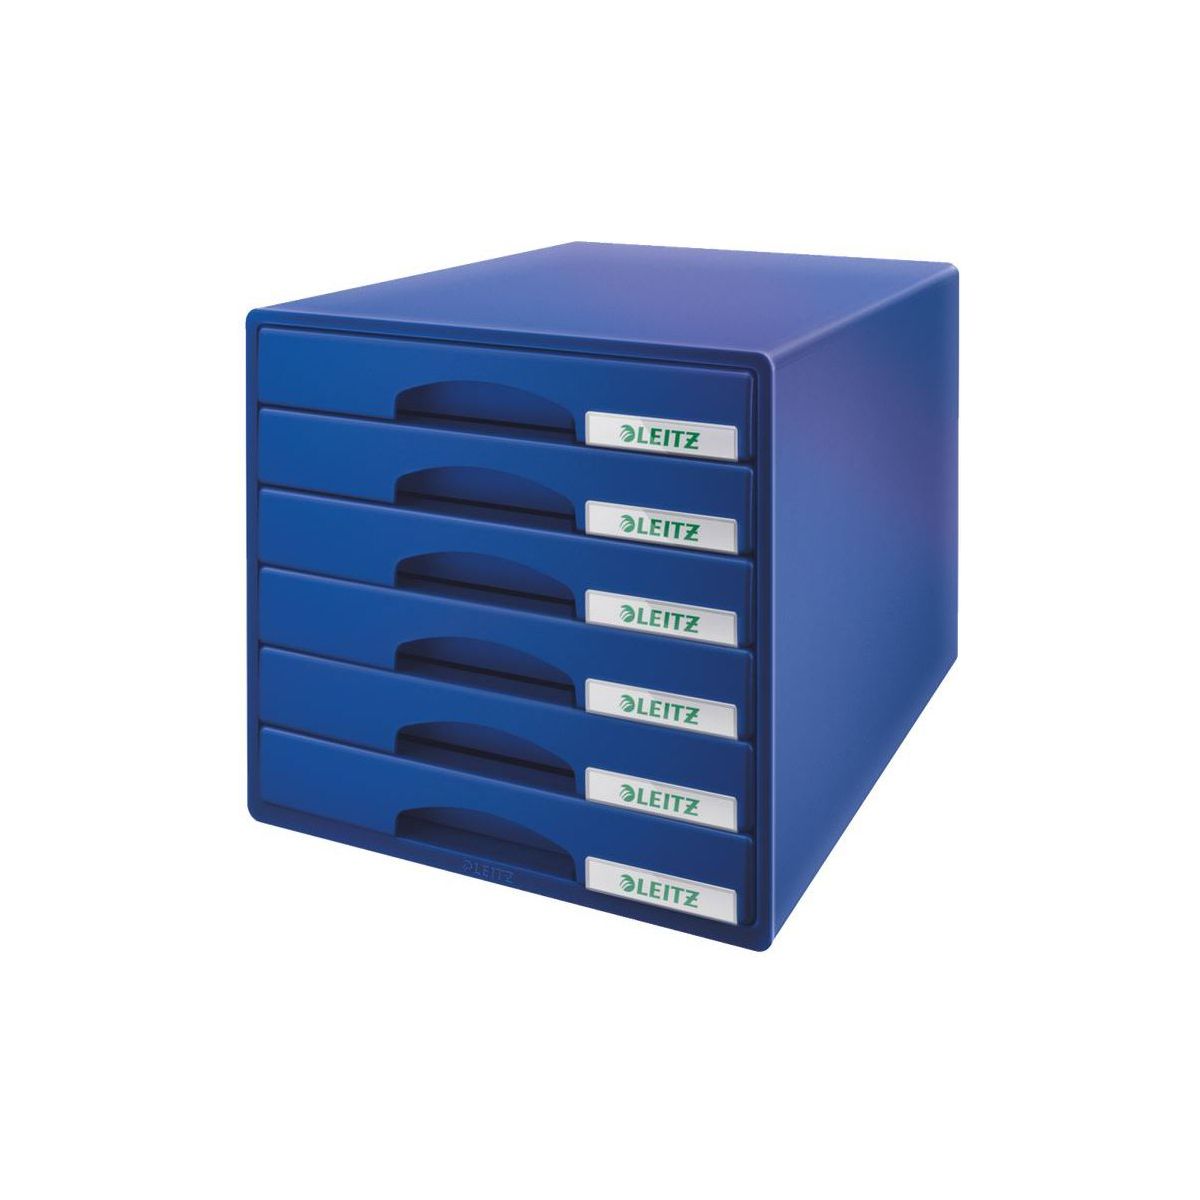 Pojemnik z szufladami Leitz PLUS niebieski (52120035)